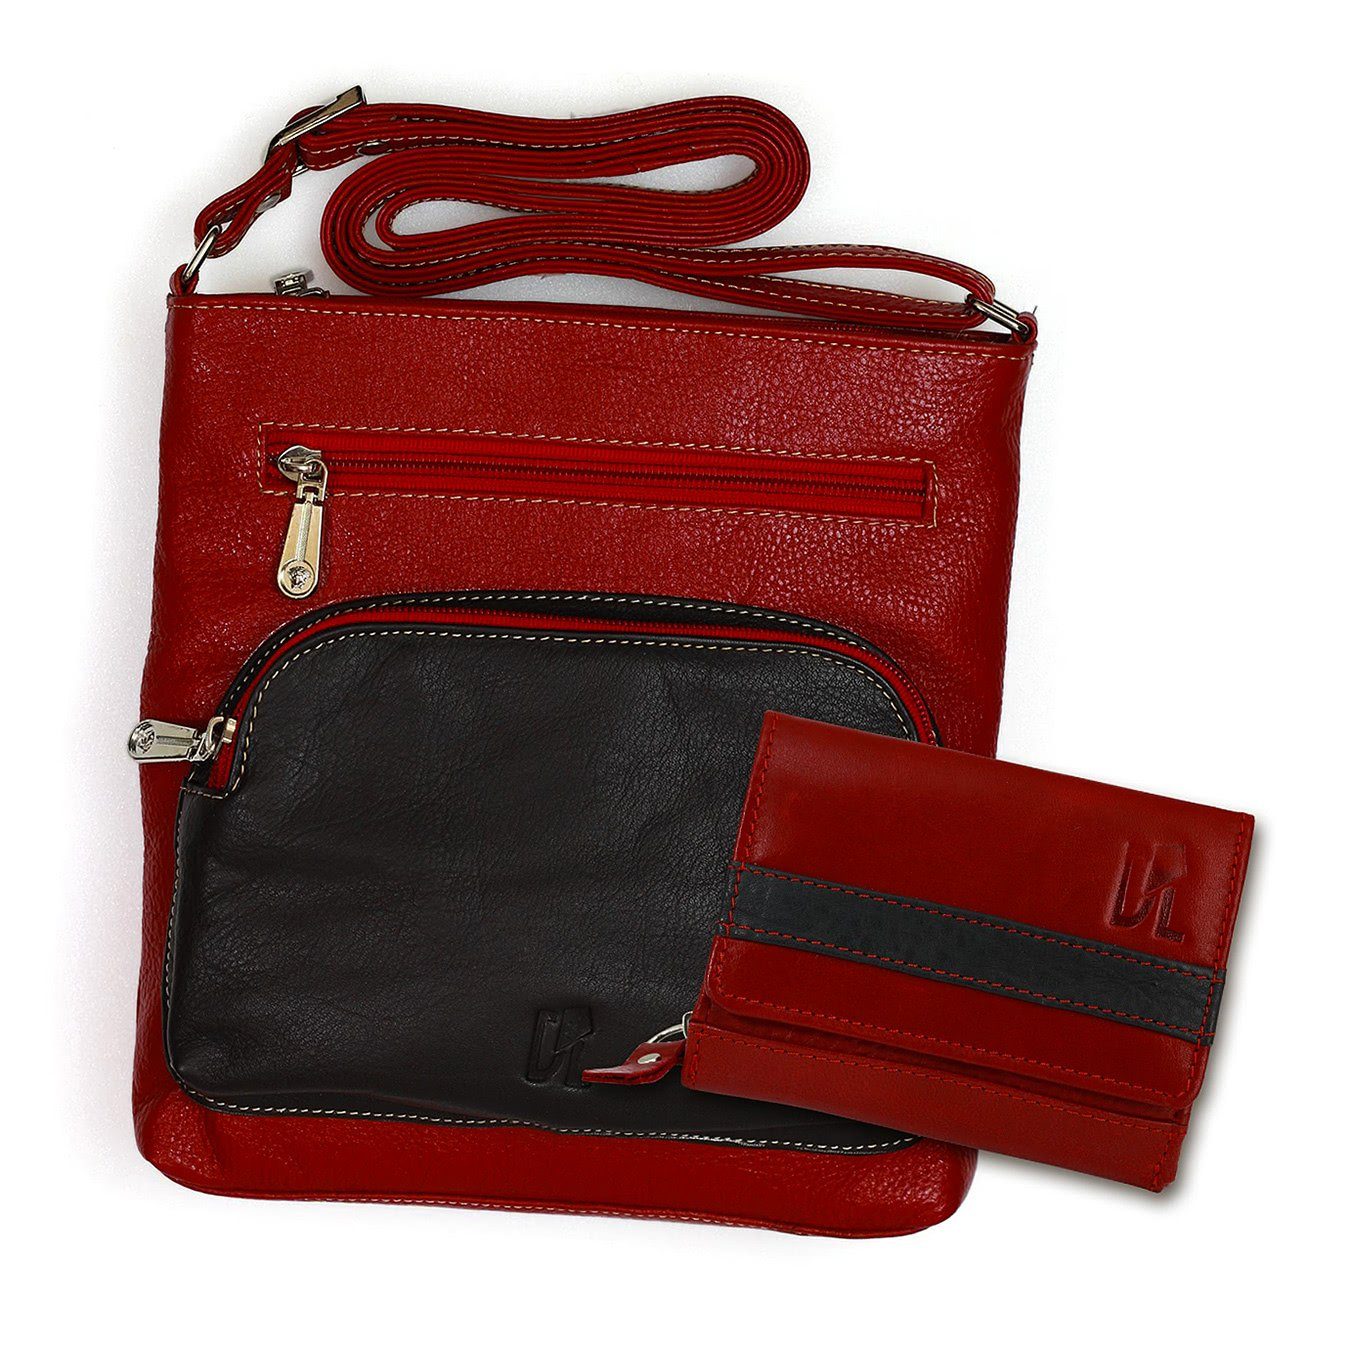 DrachenLeder Handtasche Umhängetasche + Geldbörse Set Leder rot (Handtasche, 2-tlg), Handtasche, Geldbörse Echtleder, rot, schwarz | Handtaschen